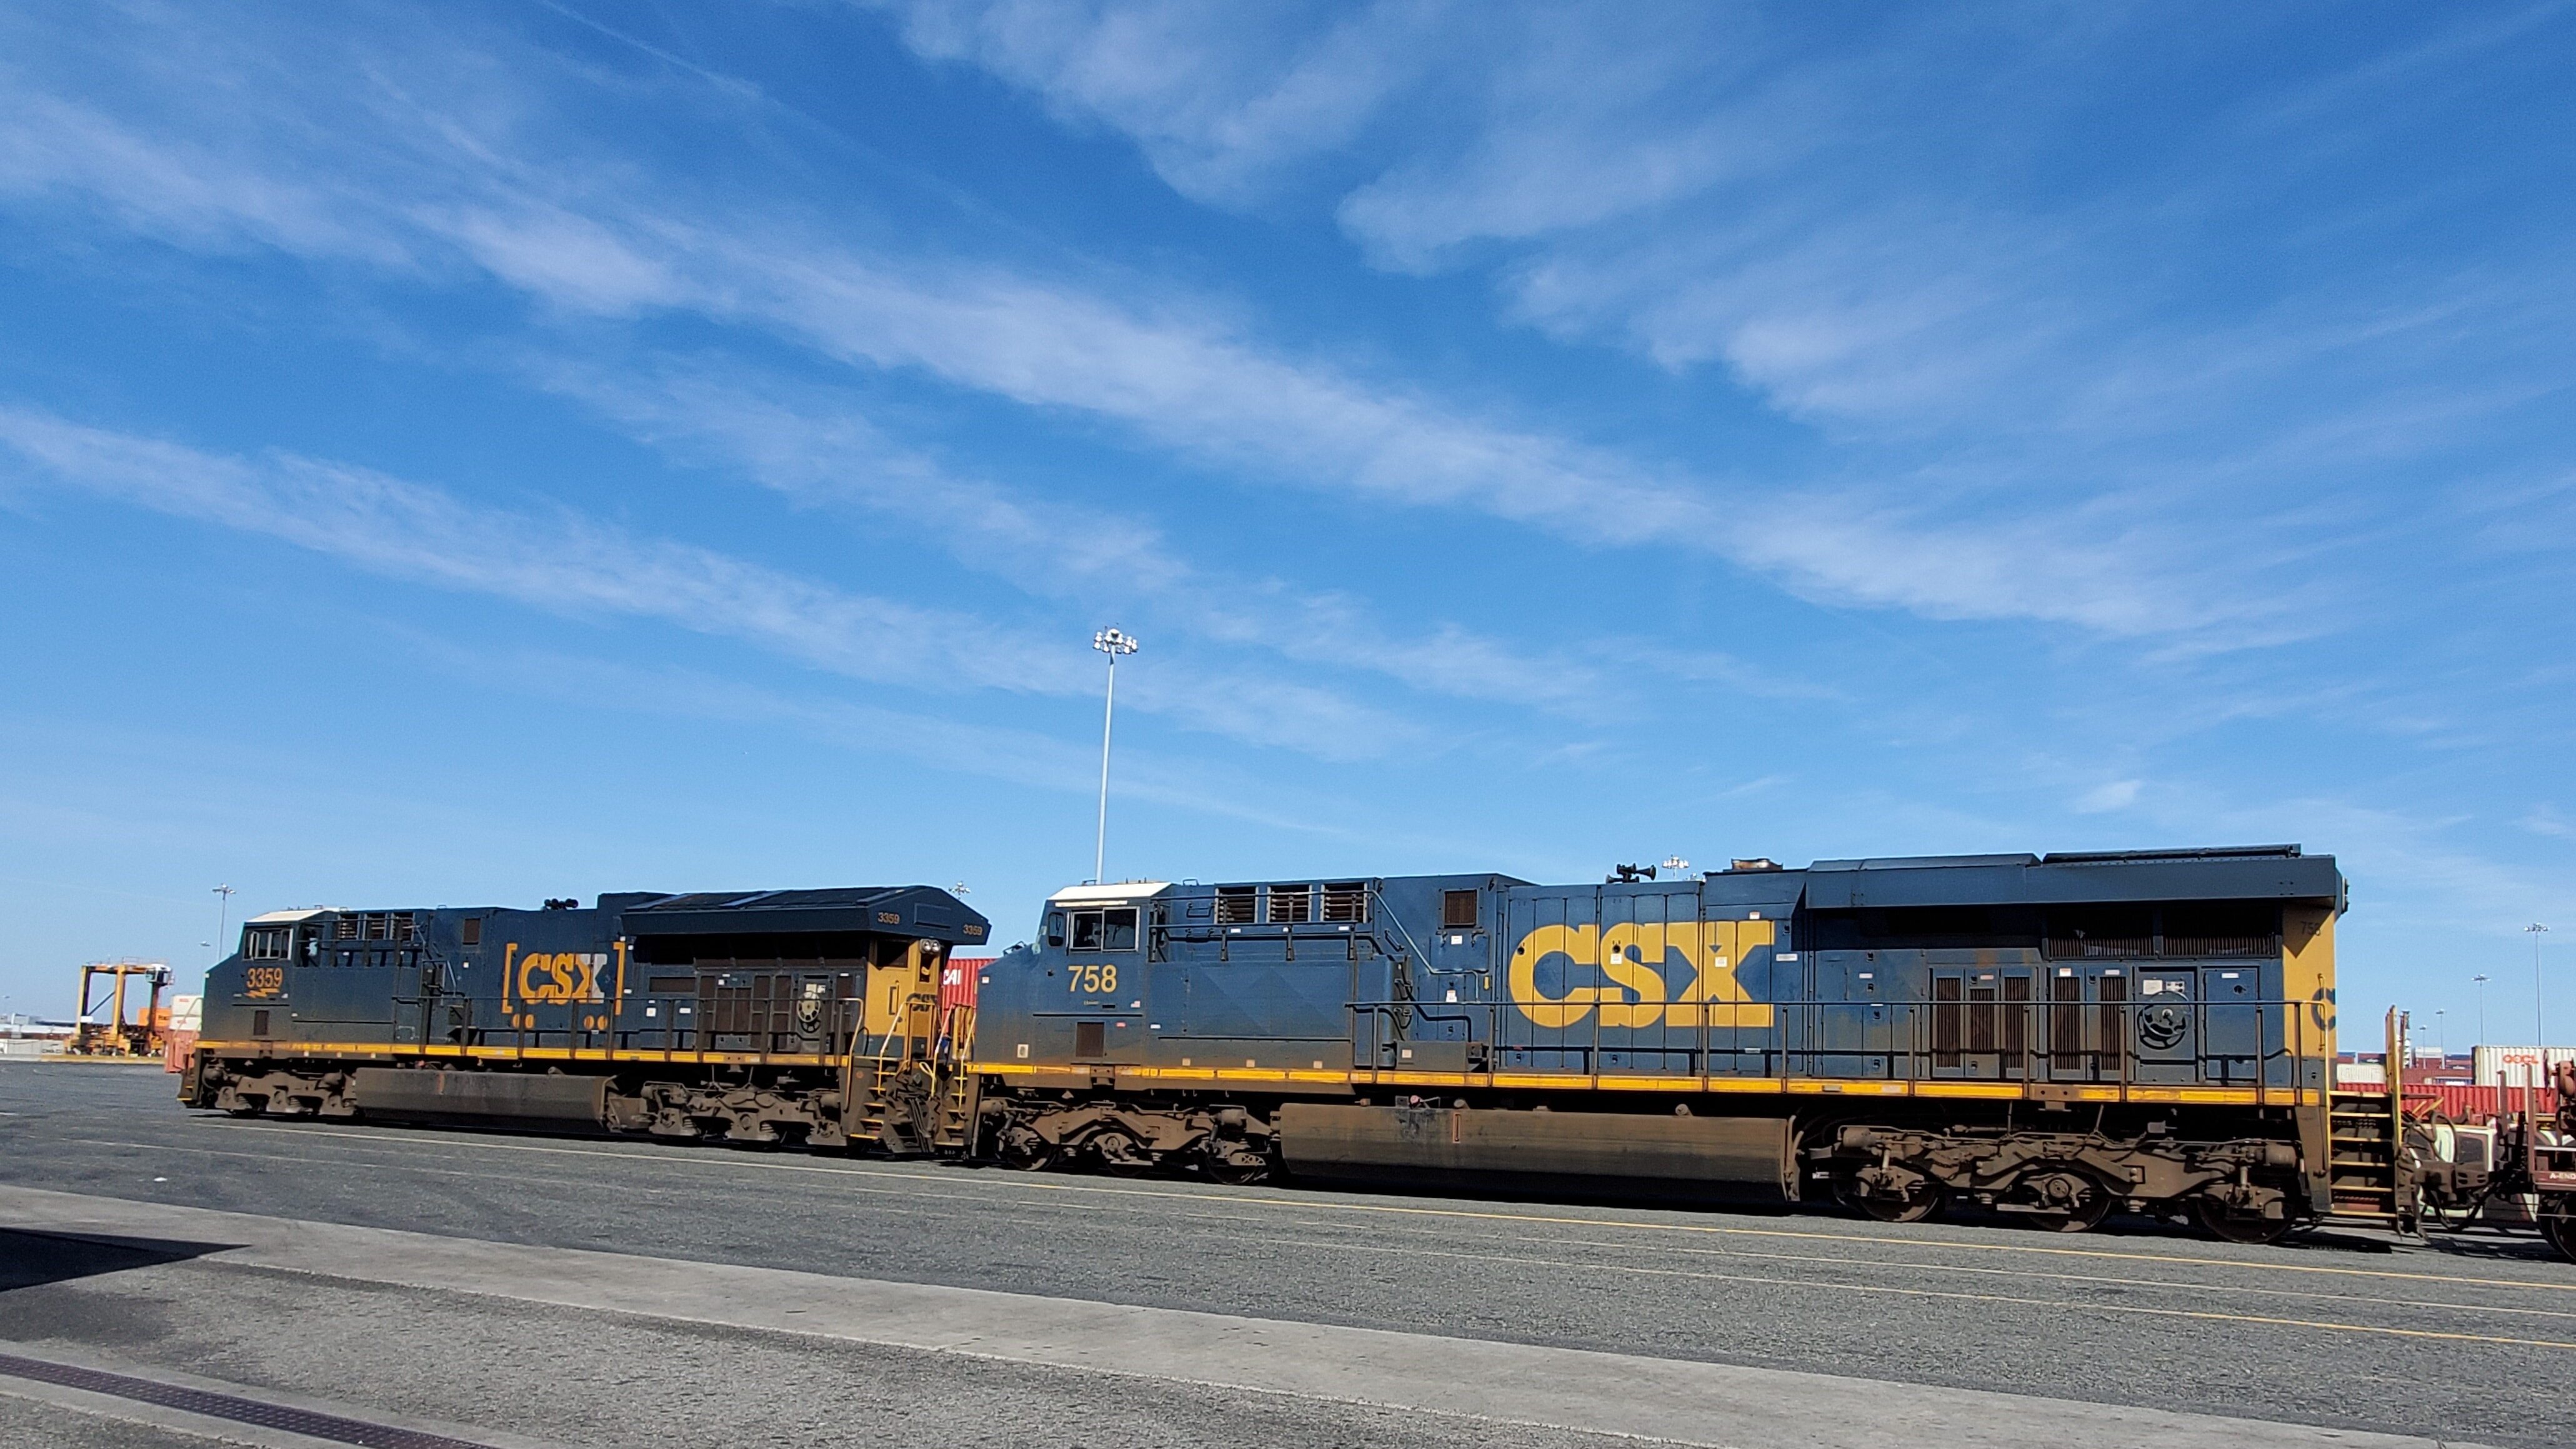 A photograph of a CSX train at the terminal.